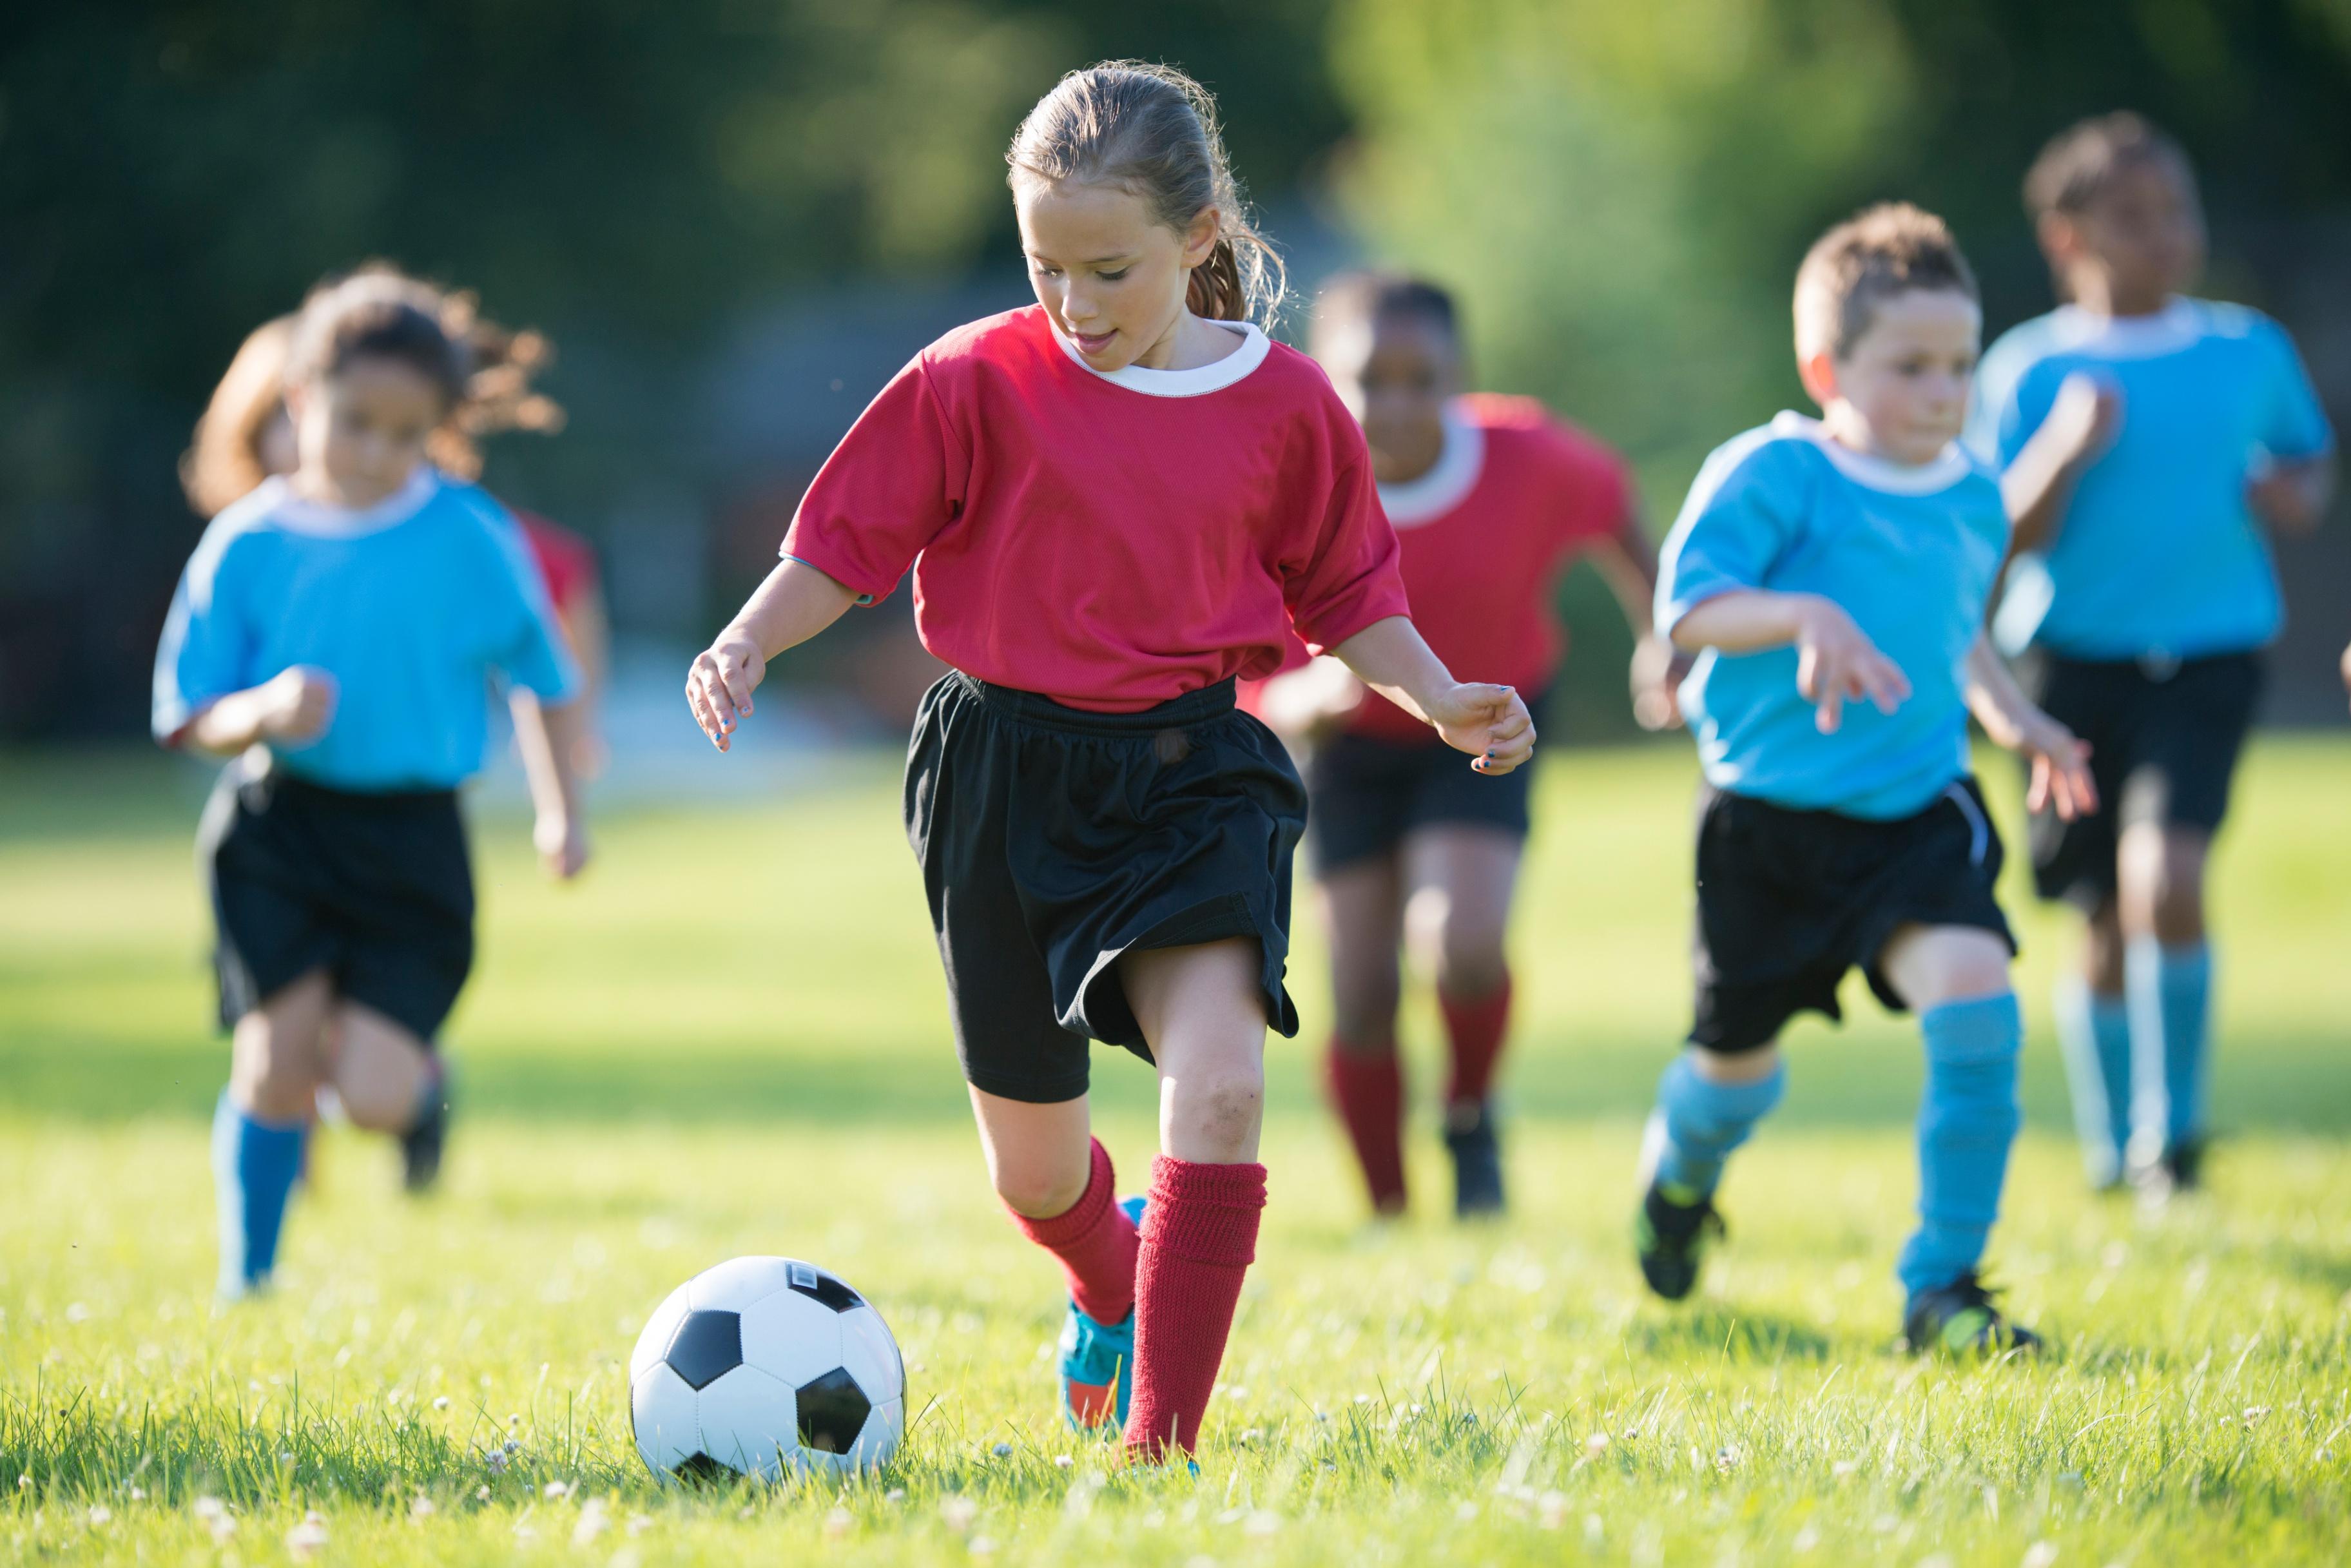 Картинки игры в футбол. Футбол дети. Спорт футбол дети. Ребенок играющий в футбол. Дети играющие в футбол.